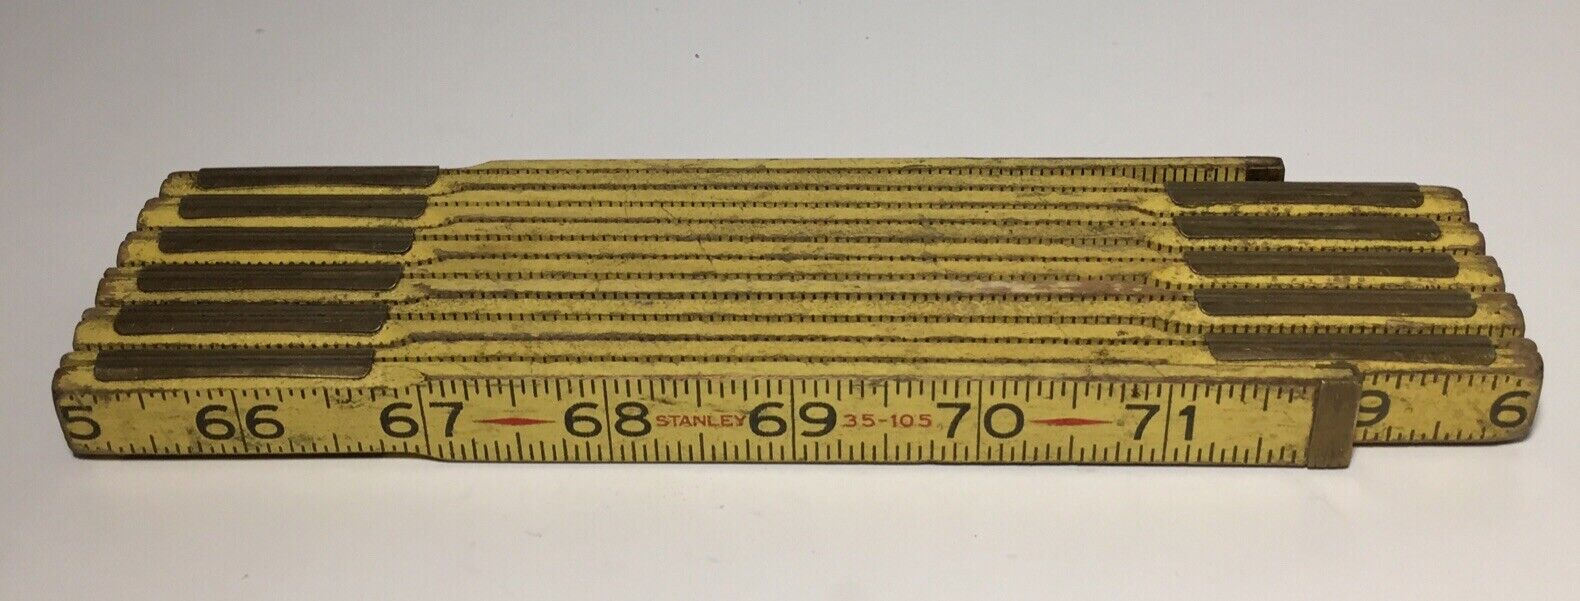 Vintage STANLEY Wooden Folding Ruler Zig Zag Rule Measure 35-105 Wood Tool